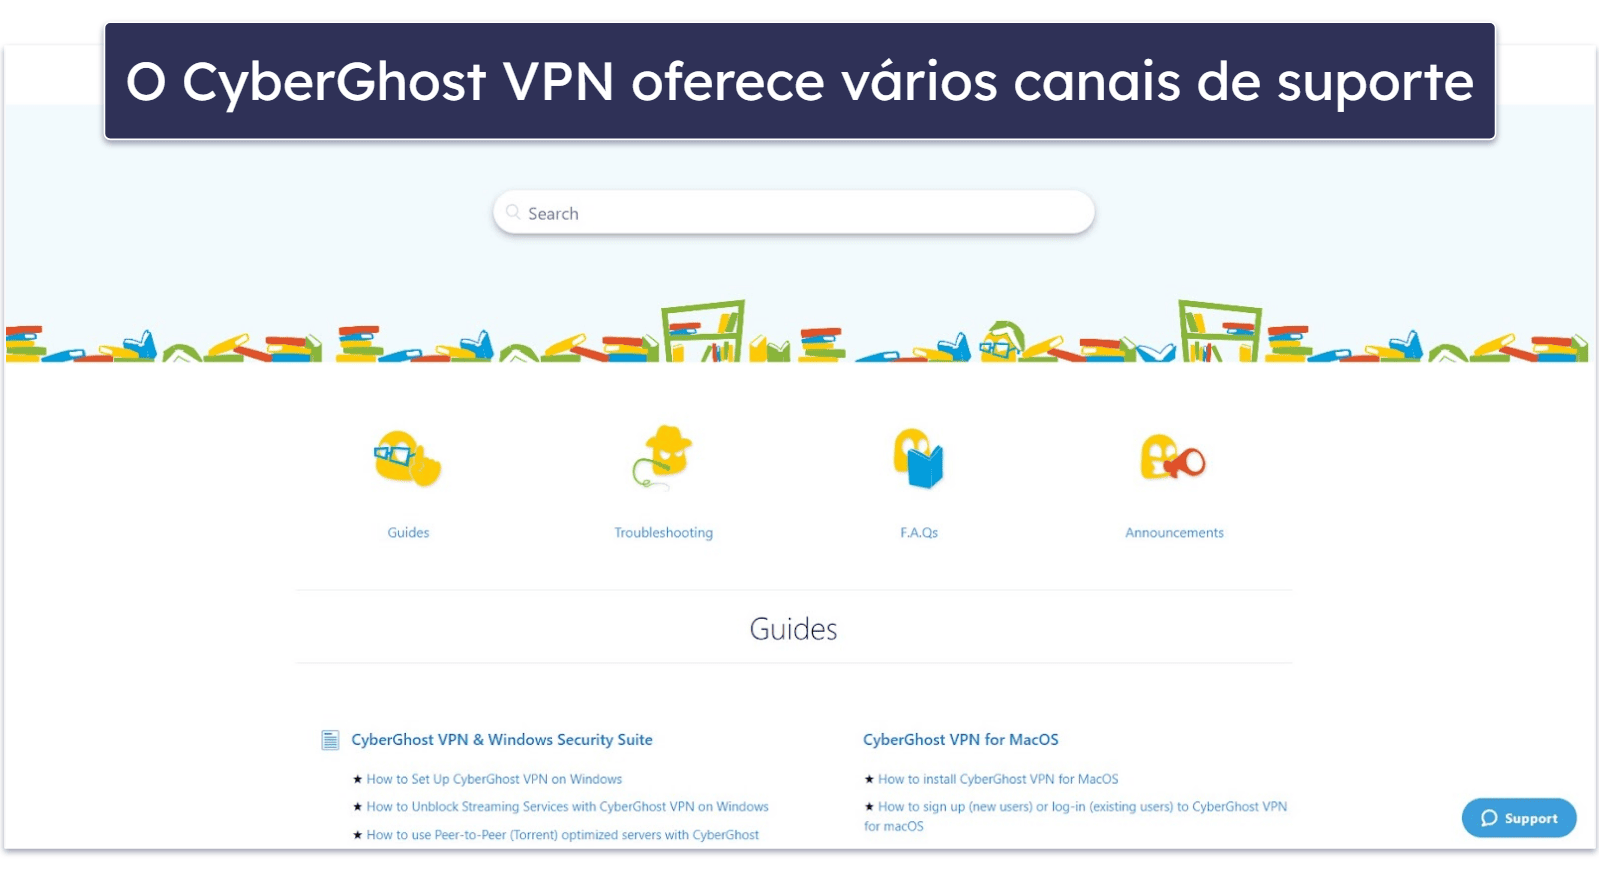 Suporte do CyberGhost VPN